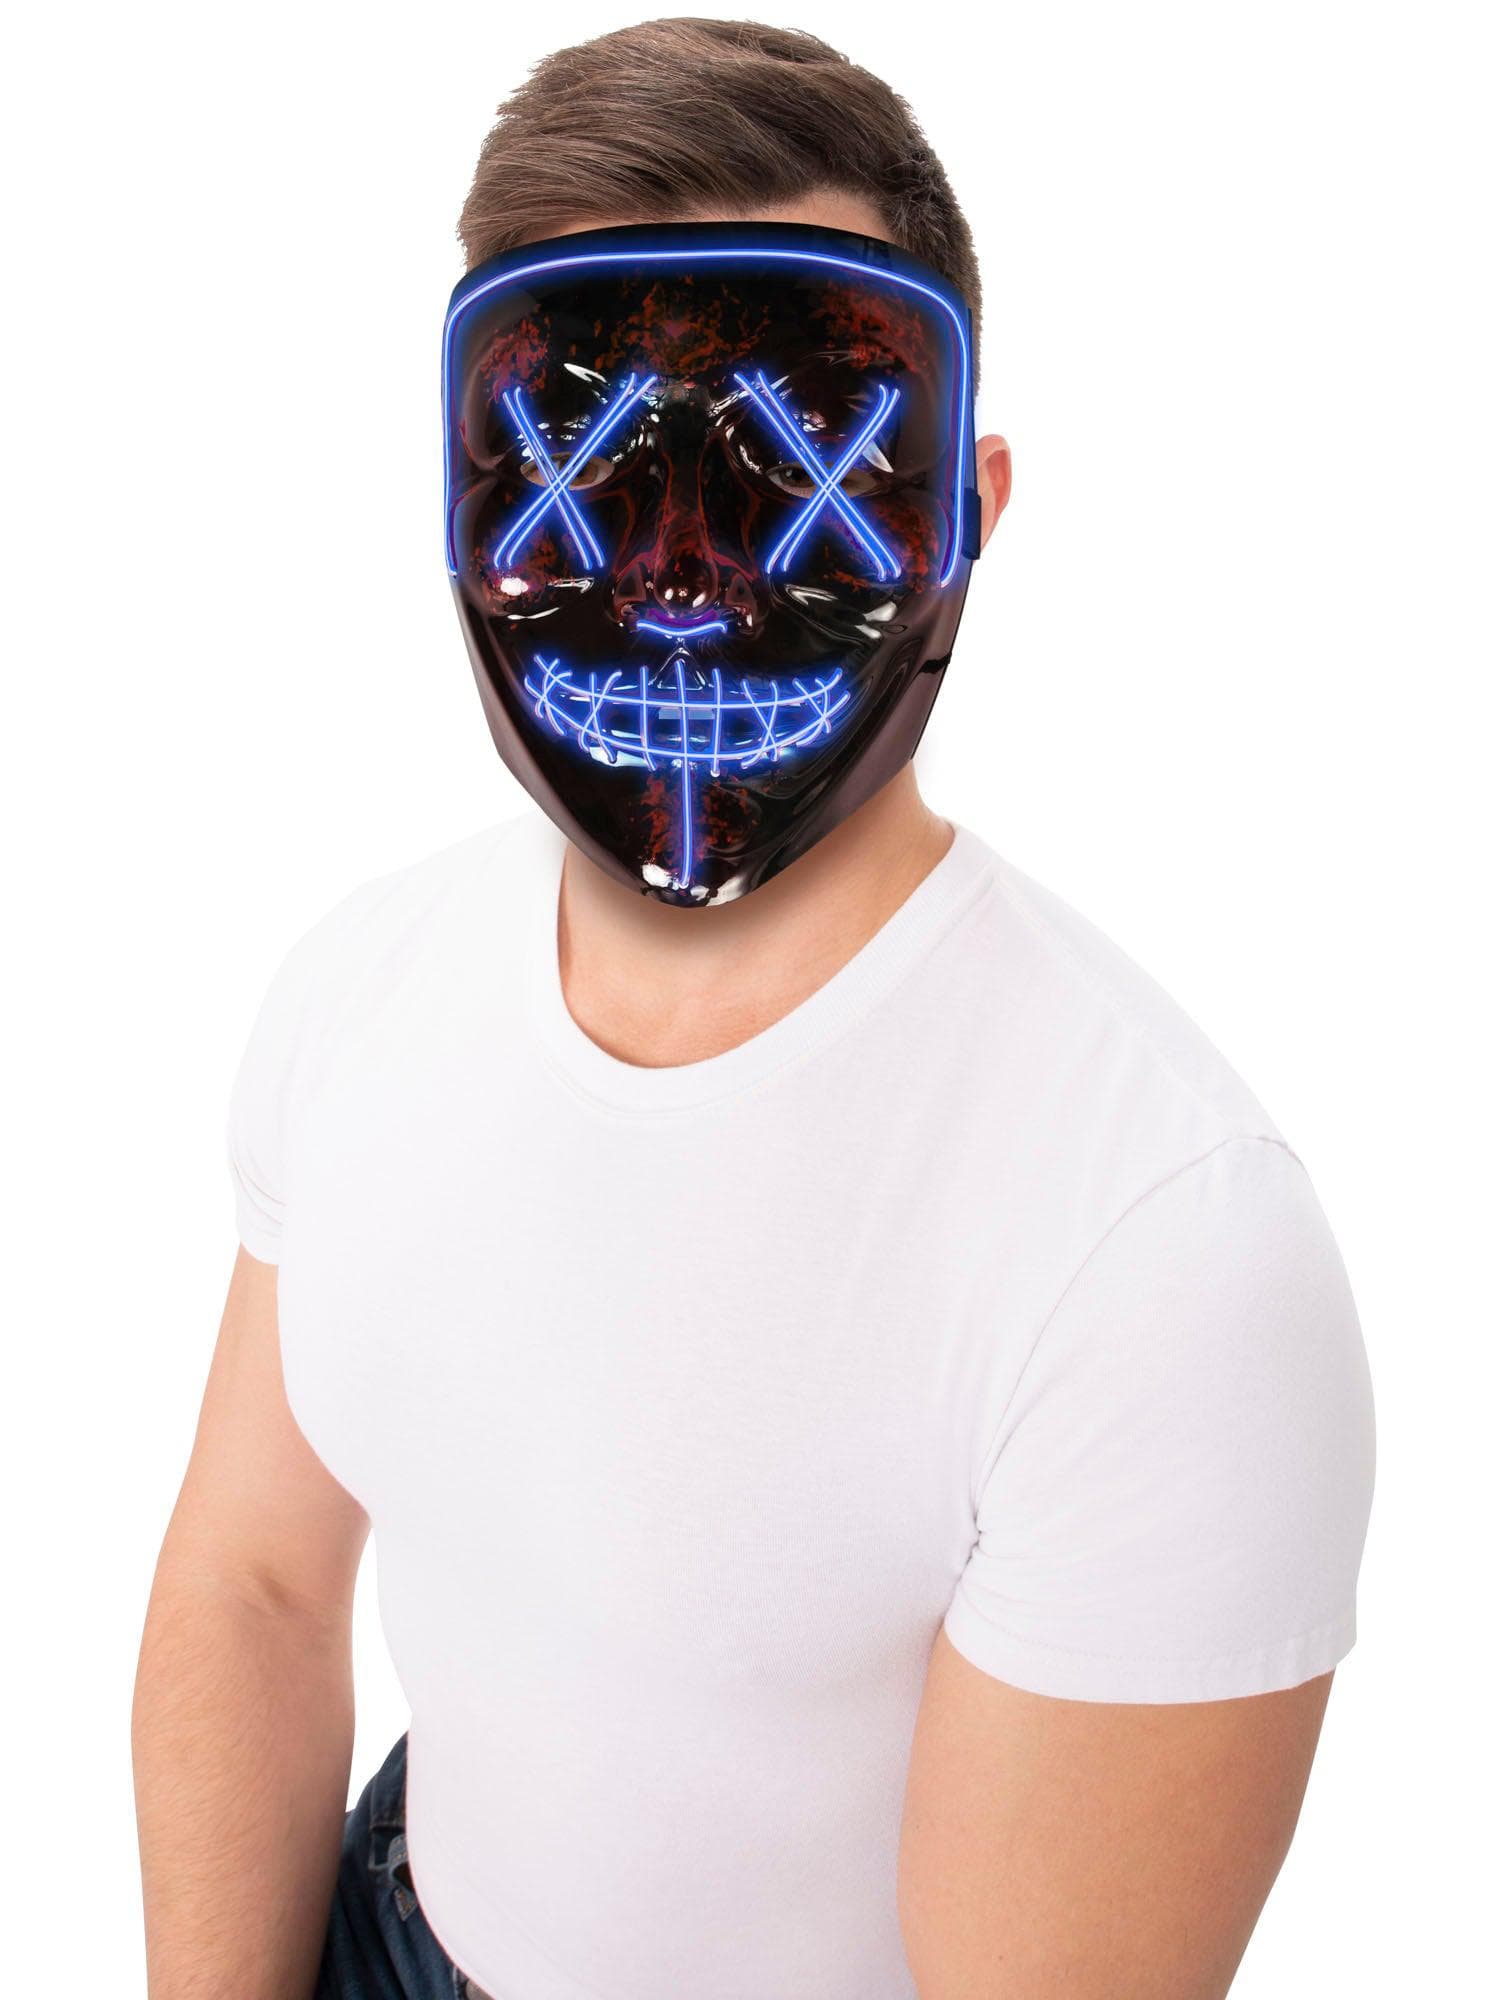 LED Blue Mask - costumes.com